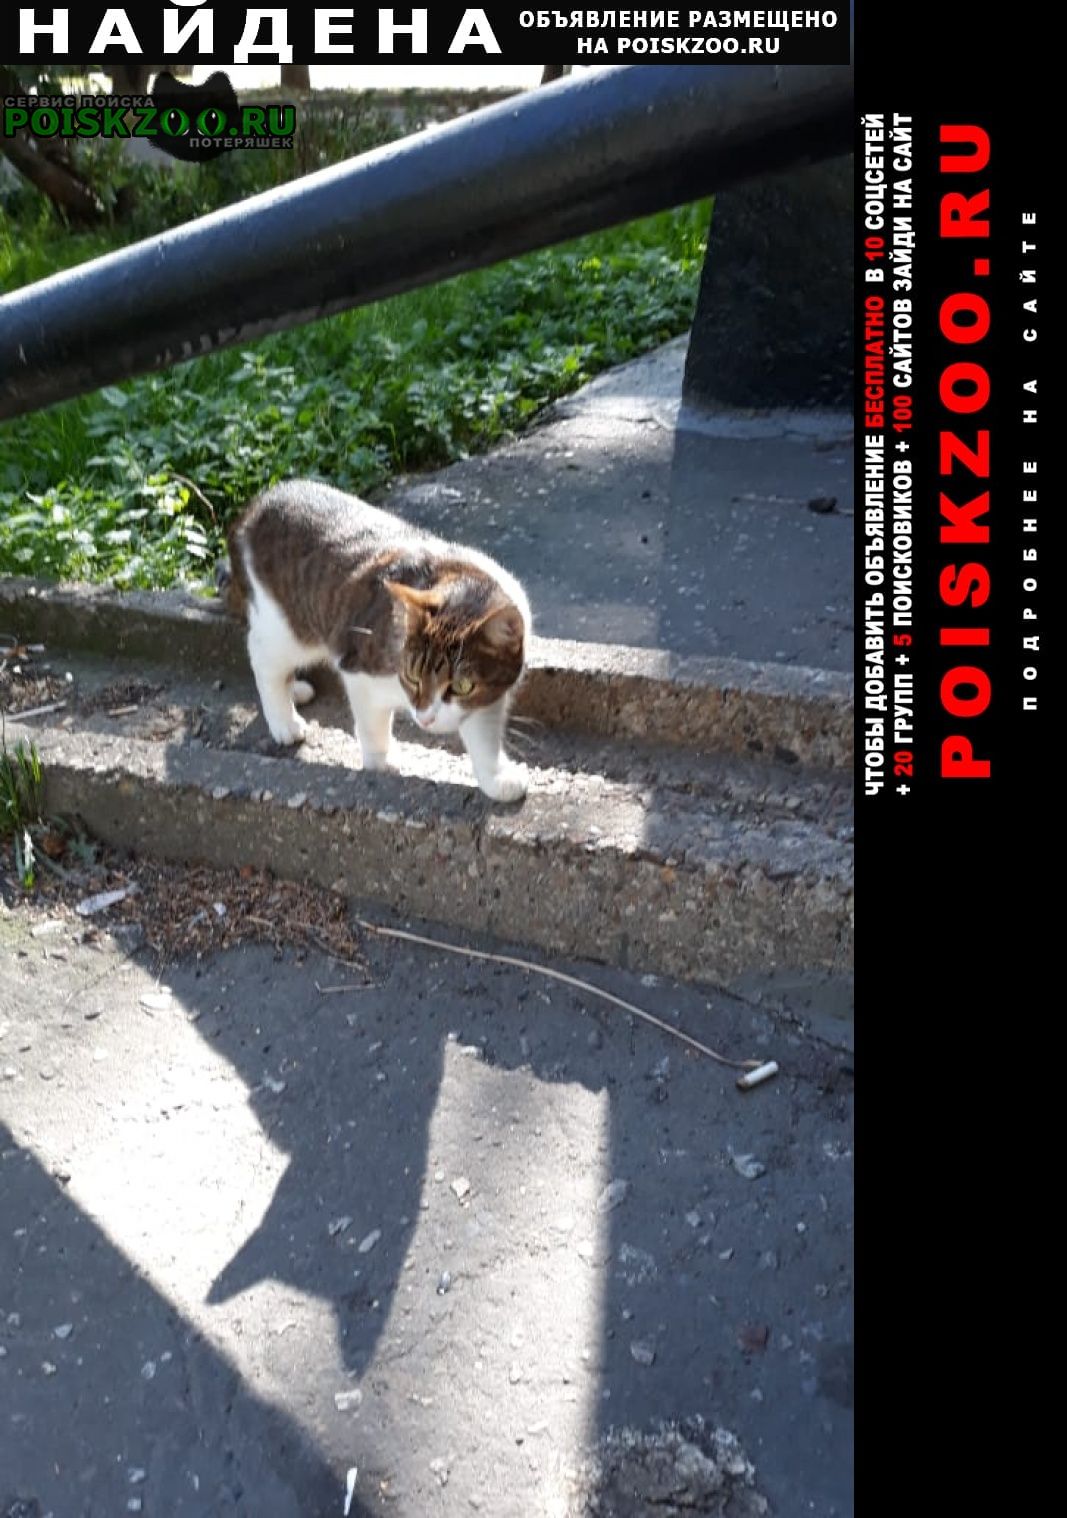 Найдена кошка карина Москва